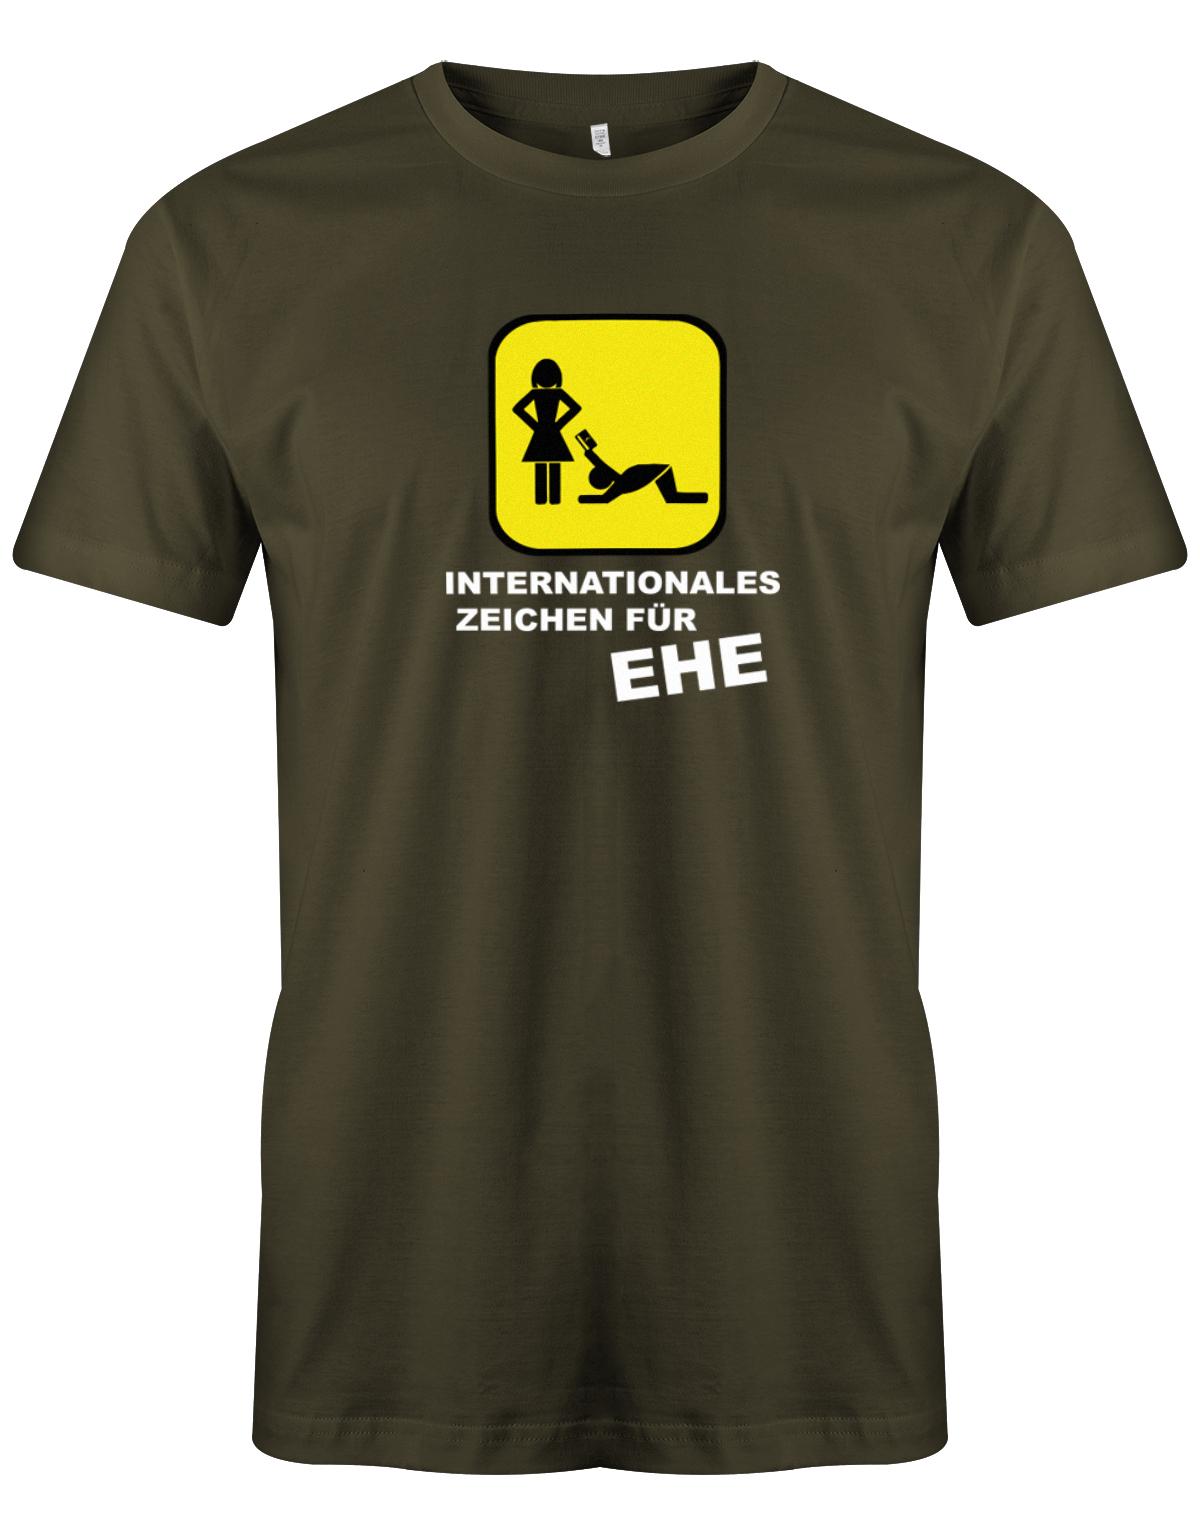 Internationales-zeichen-f-r-Ehe-Herren-Shirt-Army